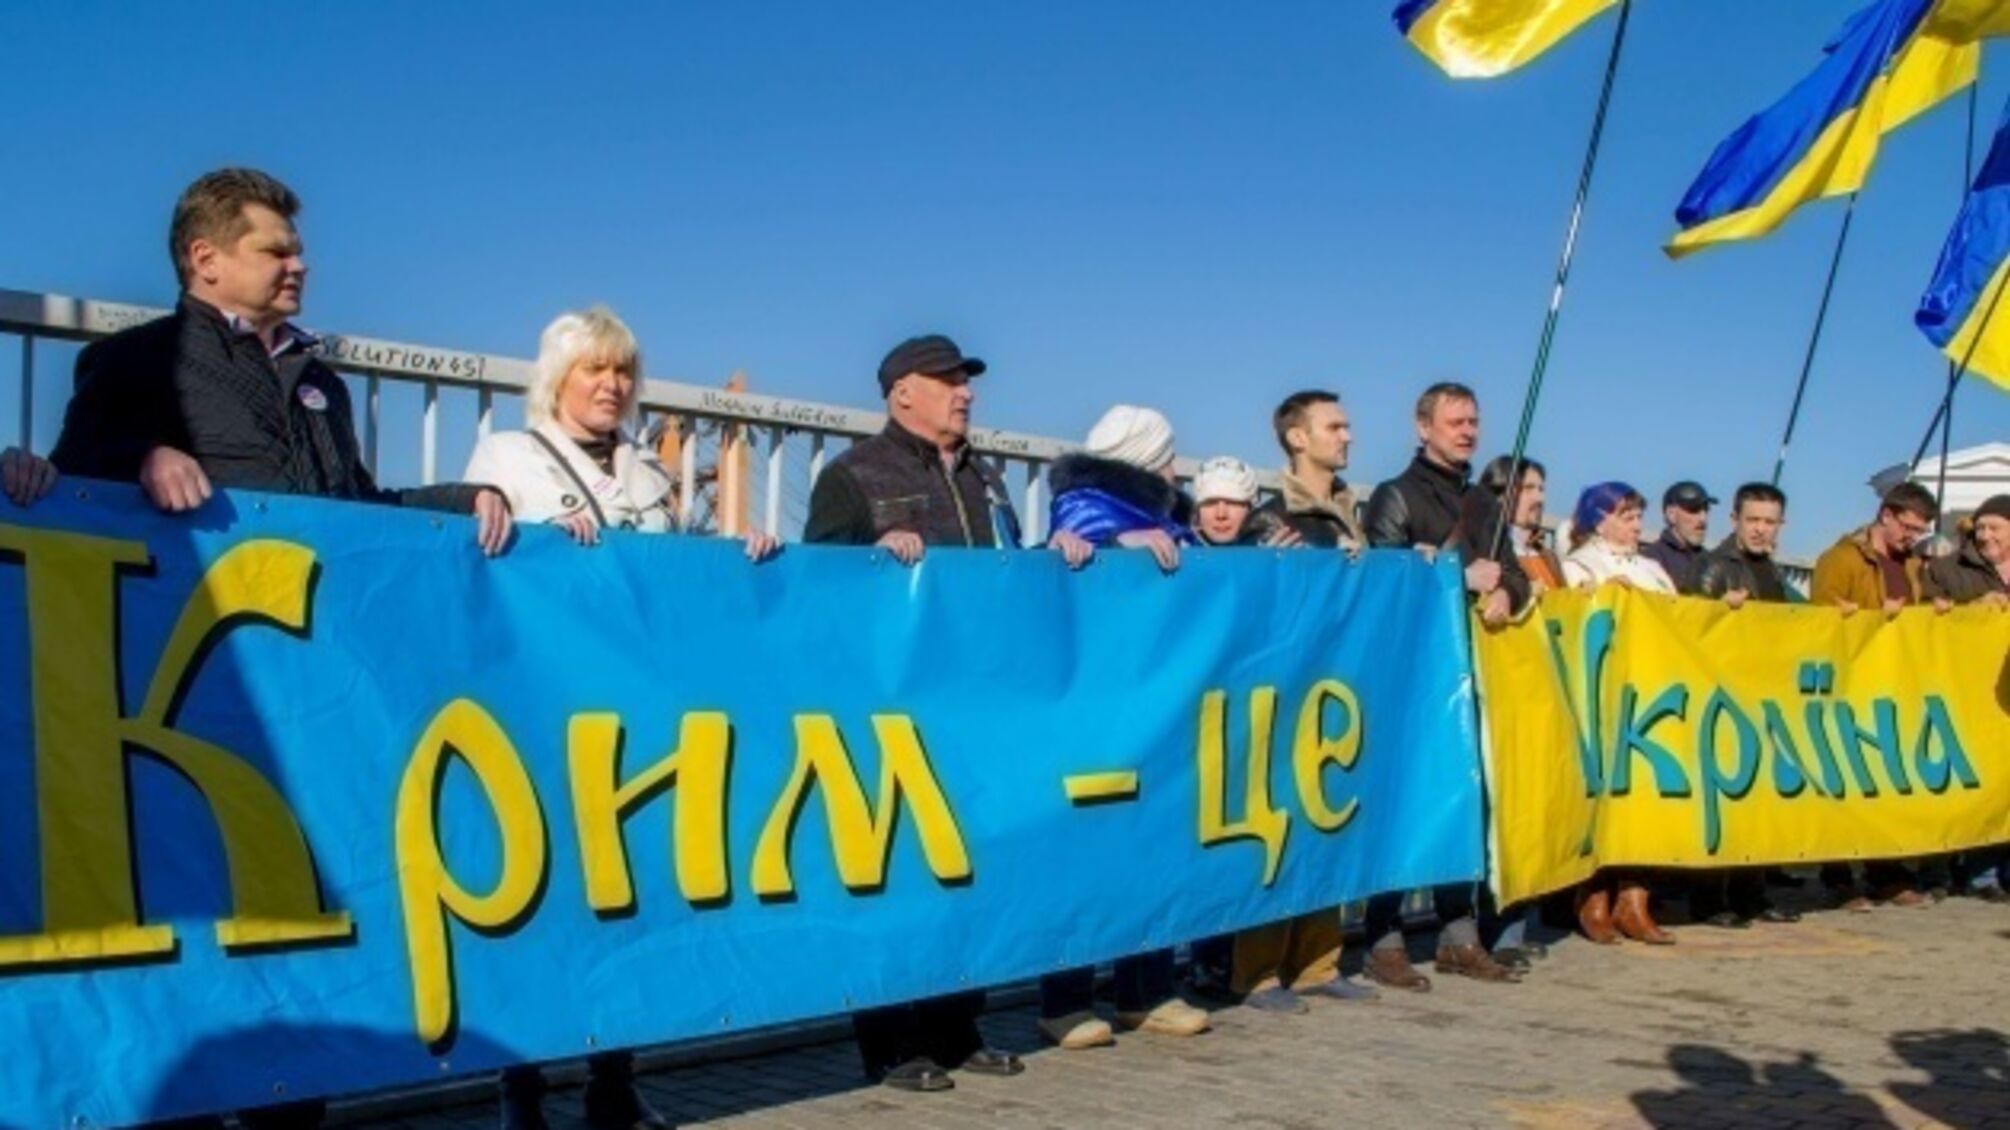 'Громко пели песни украинских националистов': в Крыму арестовали трех человек за 'Красную калину'